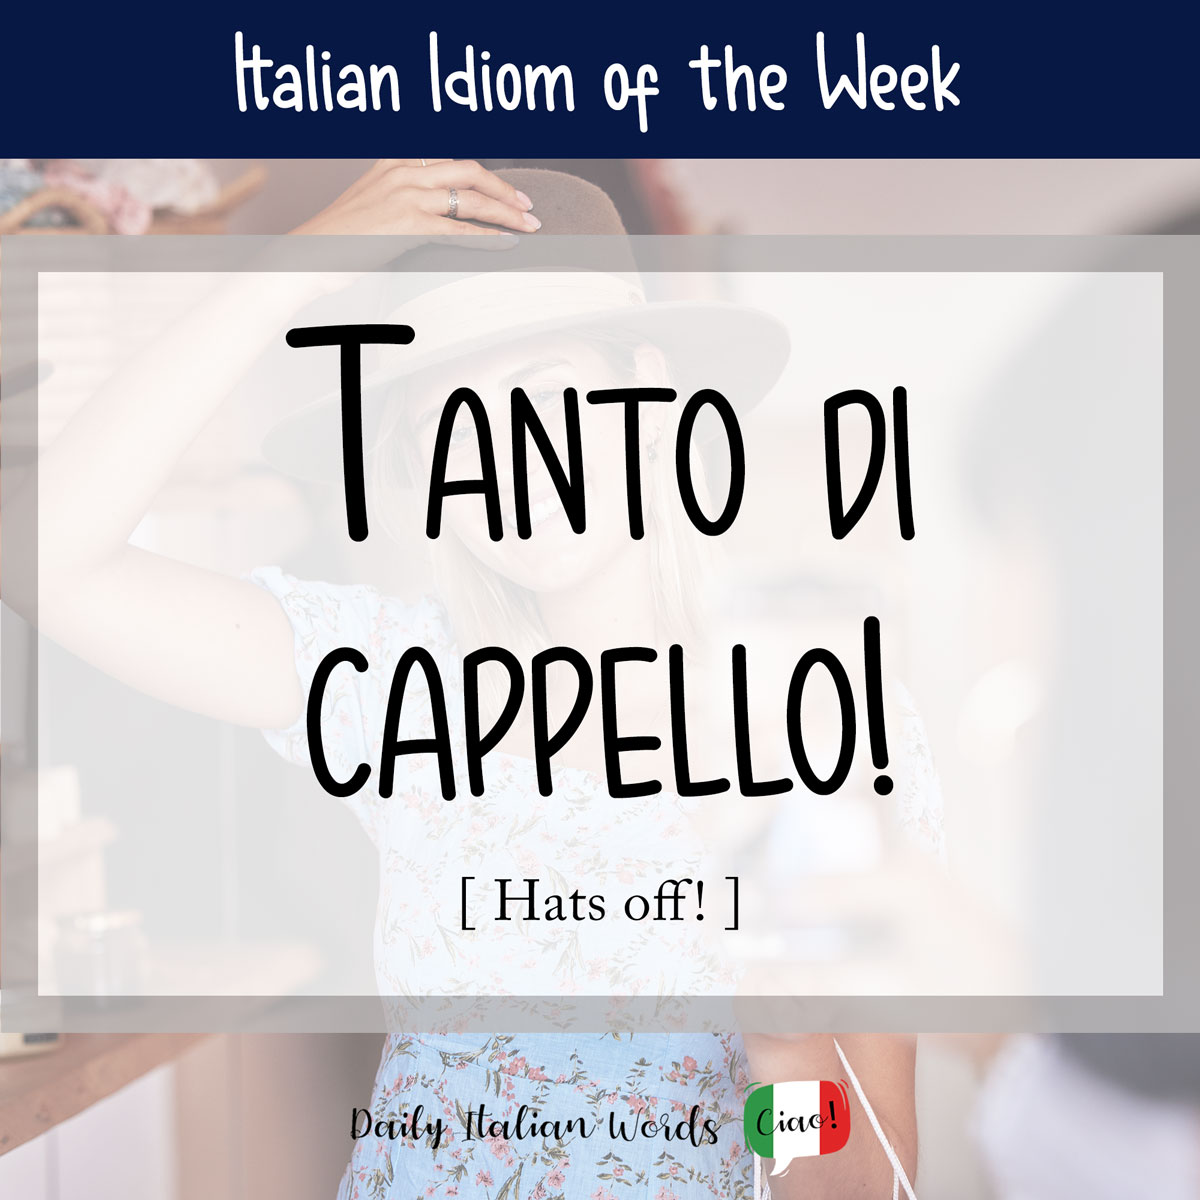 Italian idiom "Tanto di cappello"